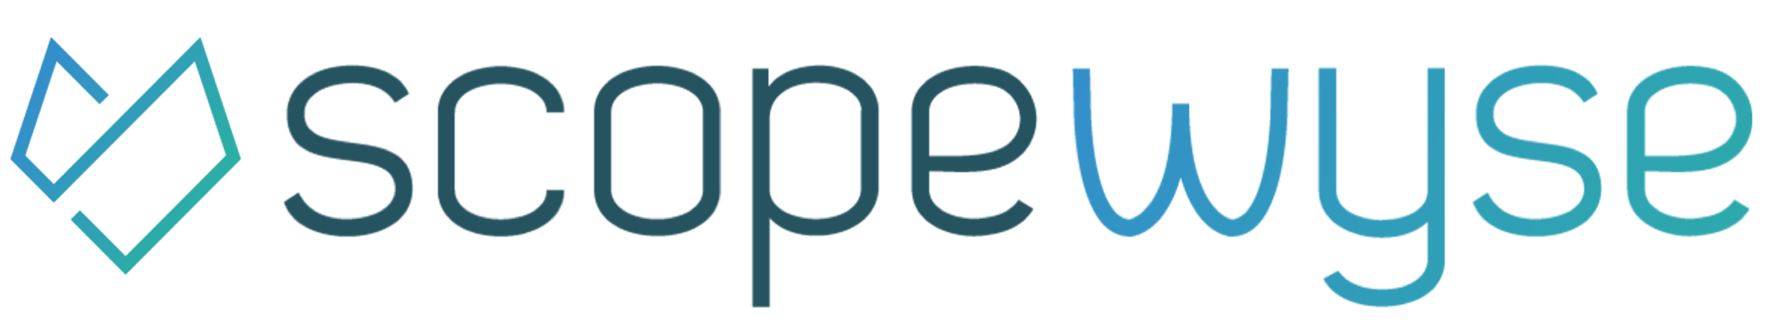 scopewyse company logo